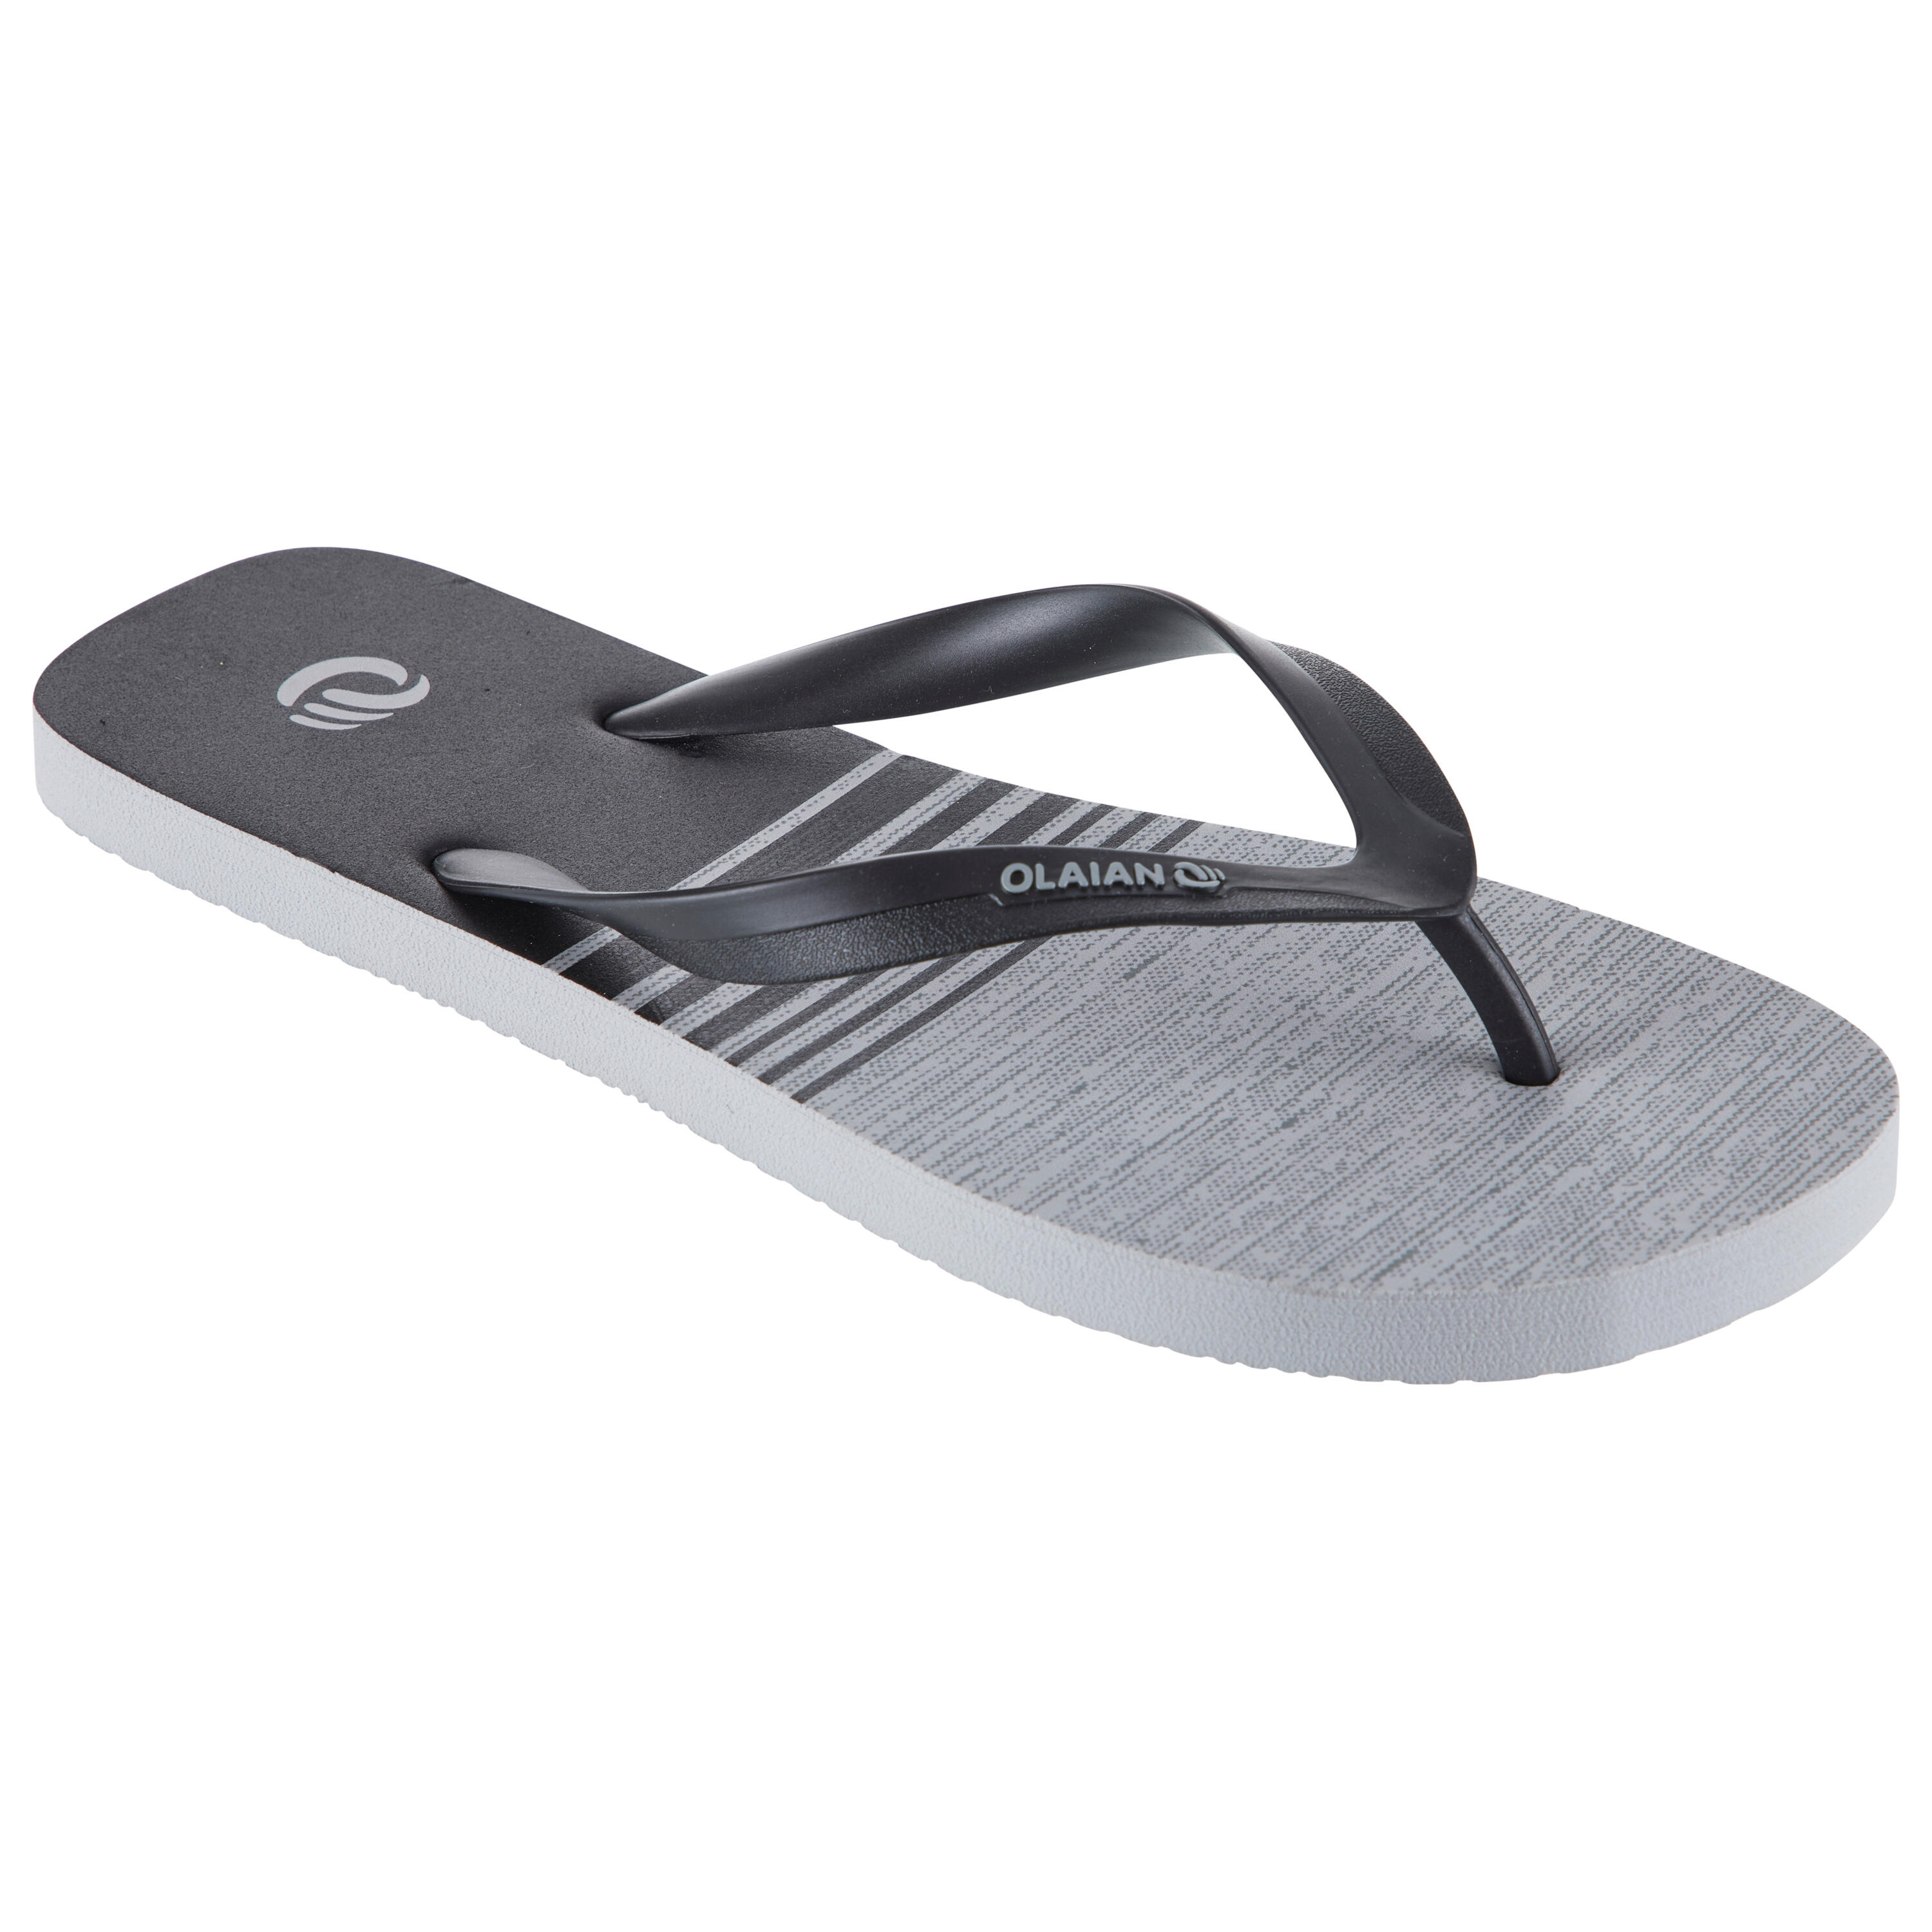 decathlon sandals online